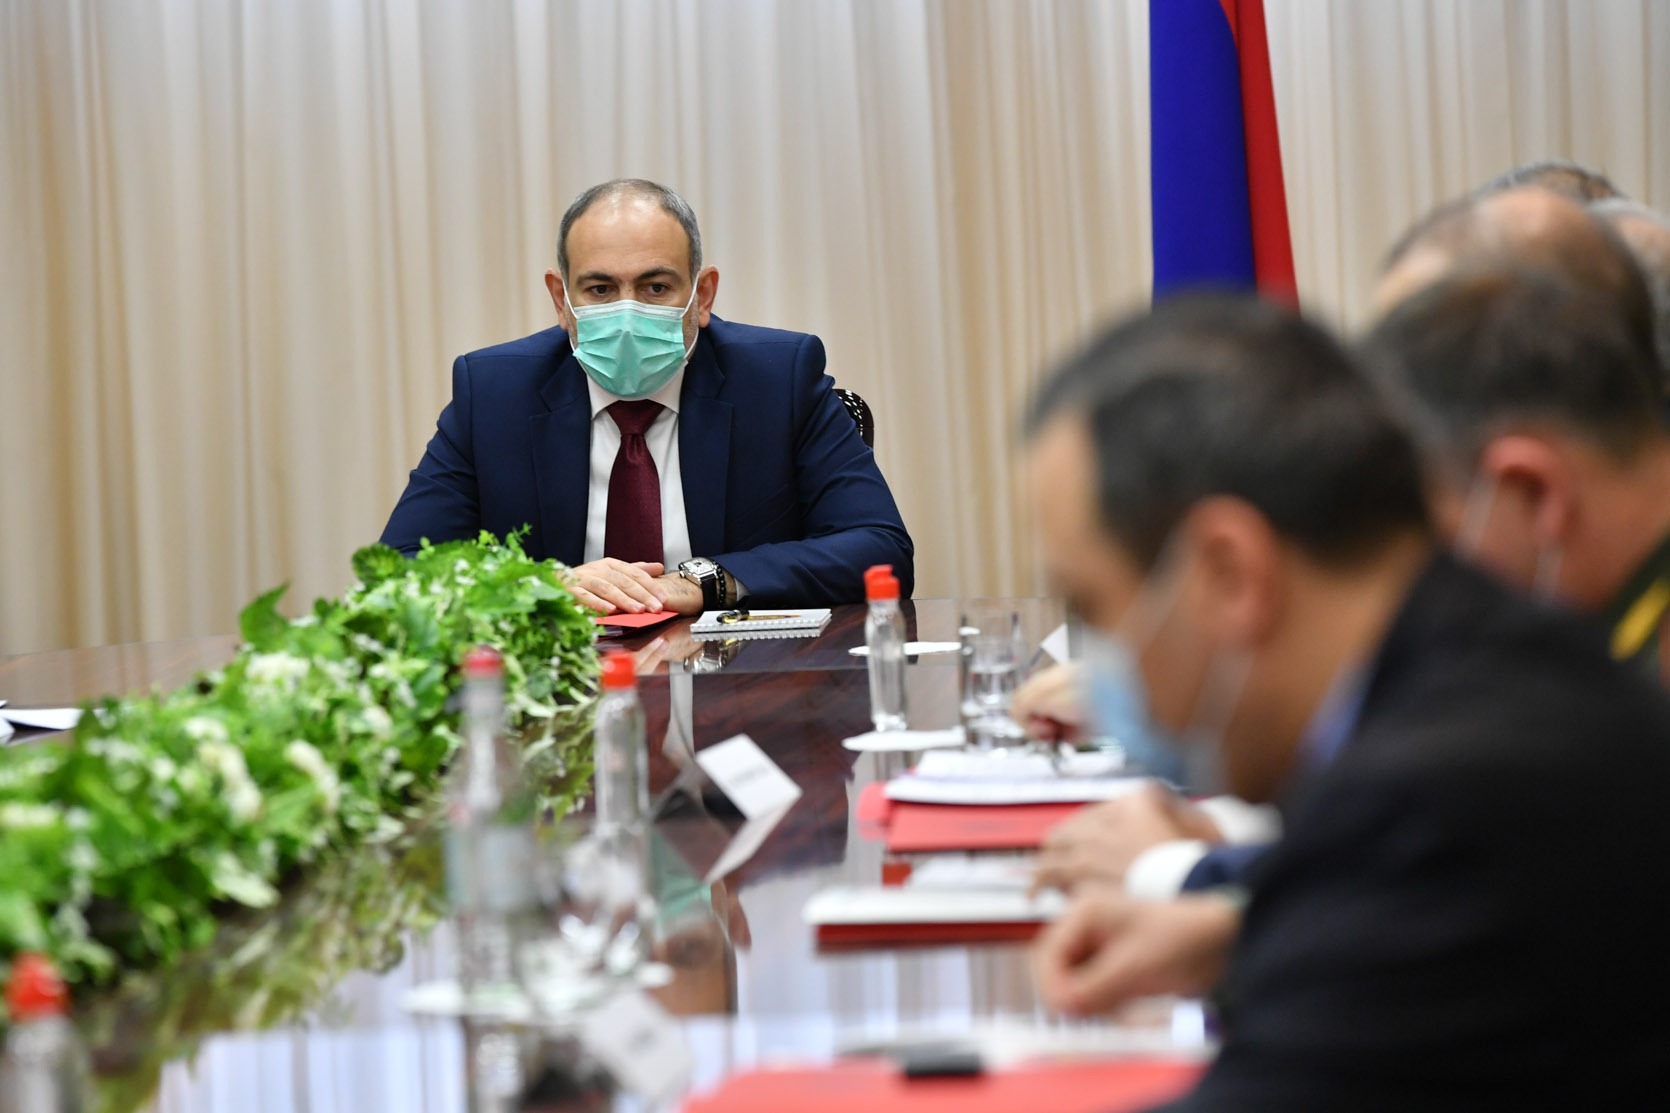 Никол Пашинян выступил на заседании Совета безопасности Армении: текст, видео